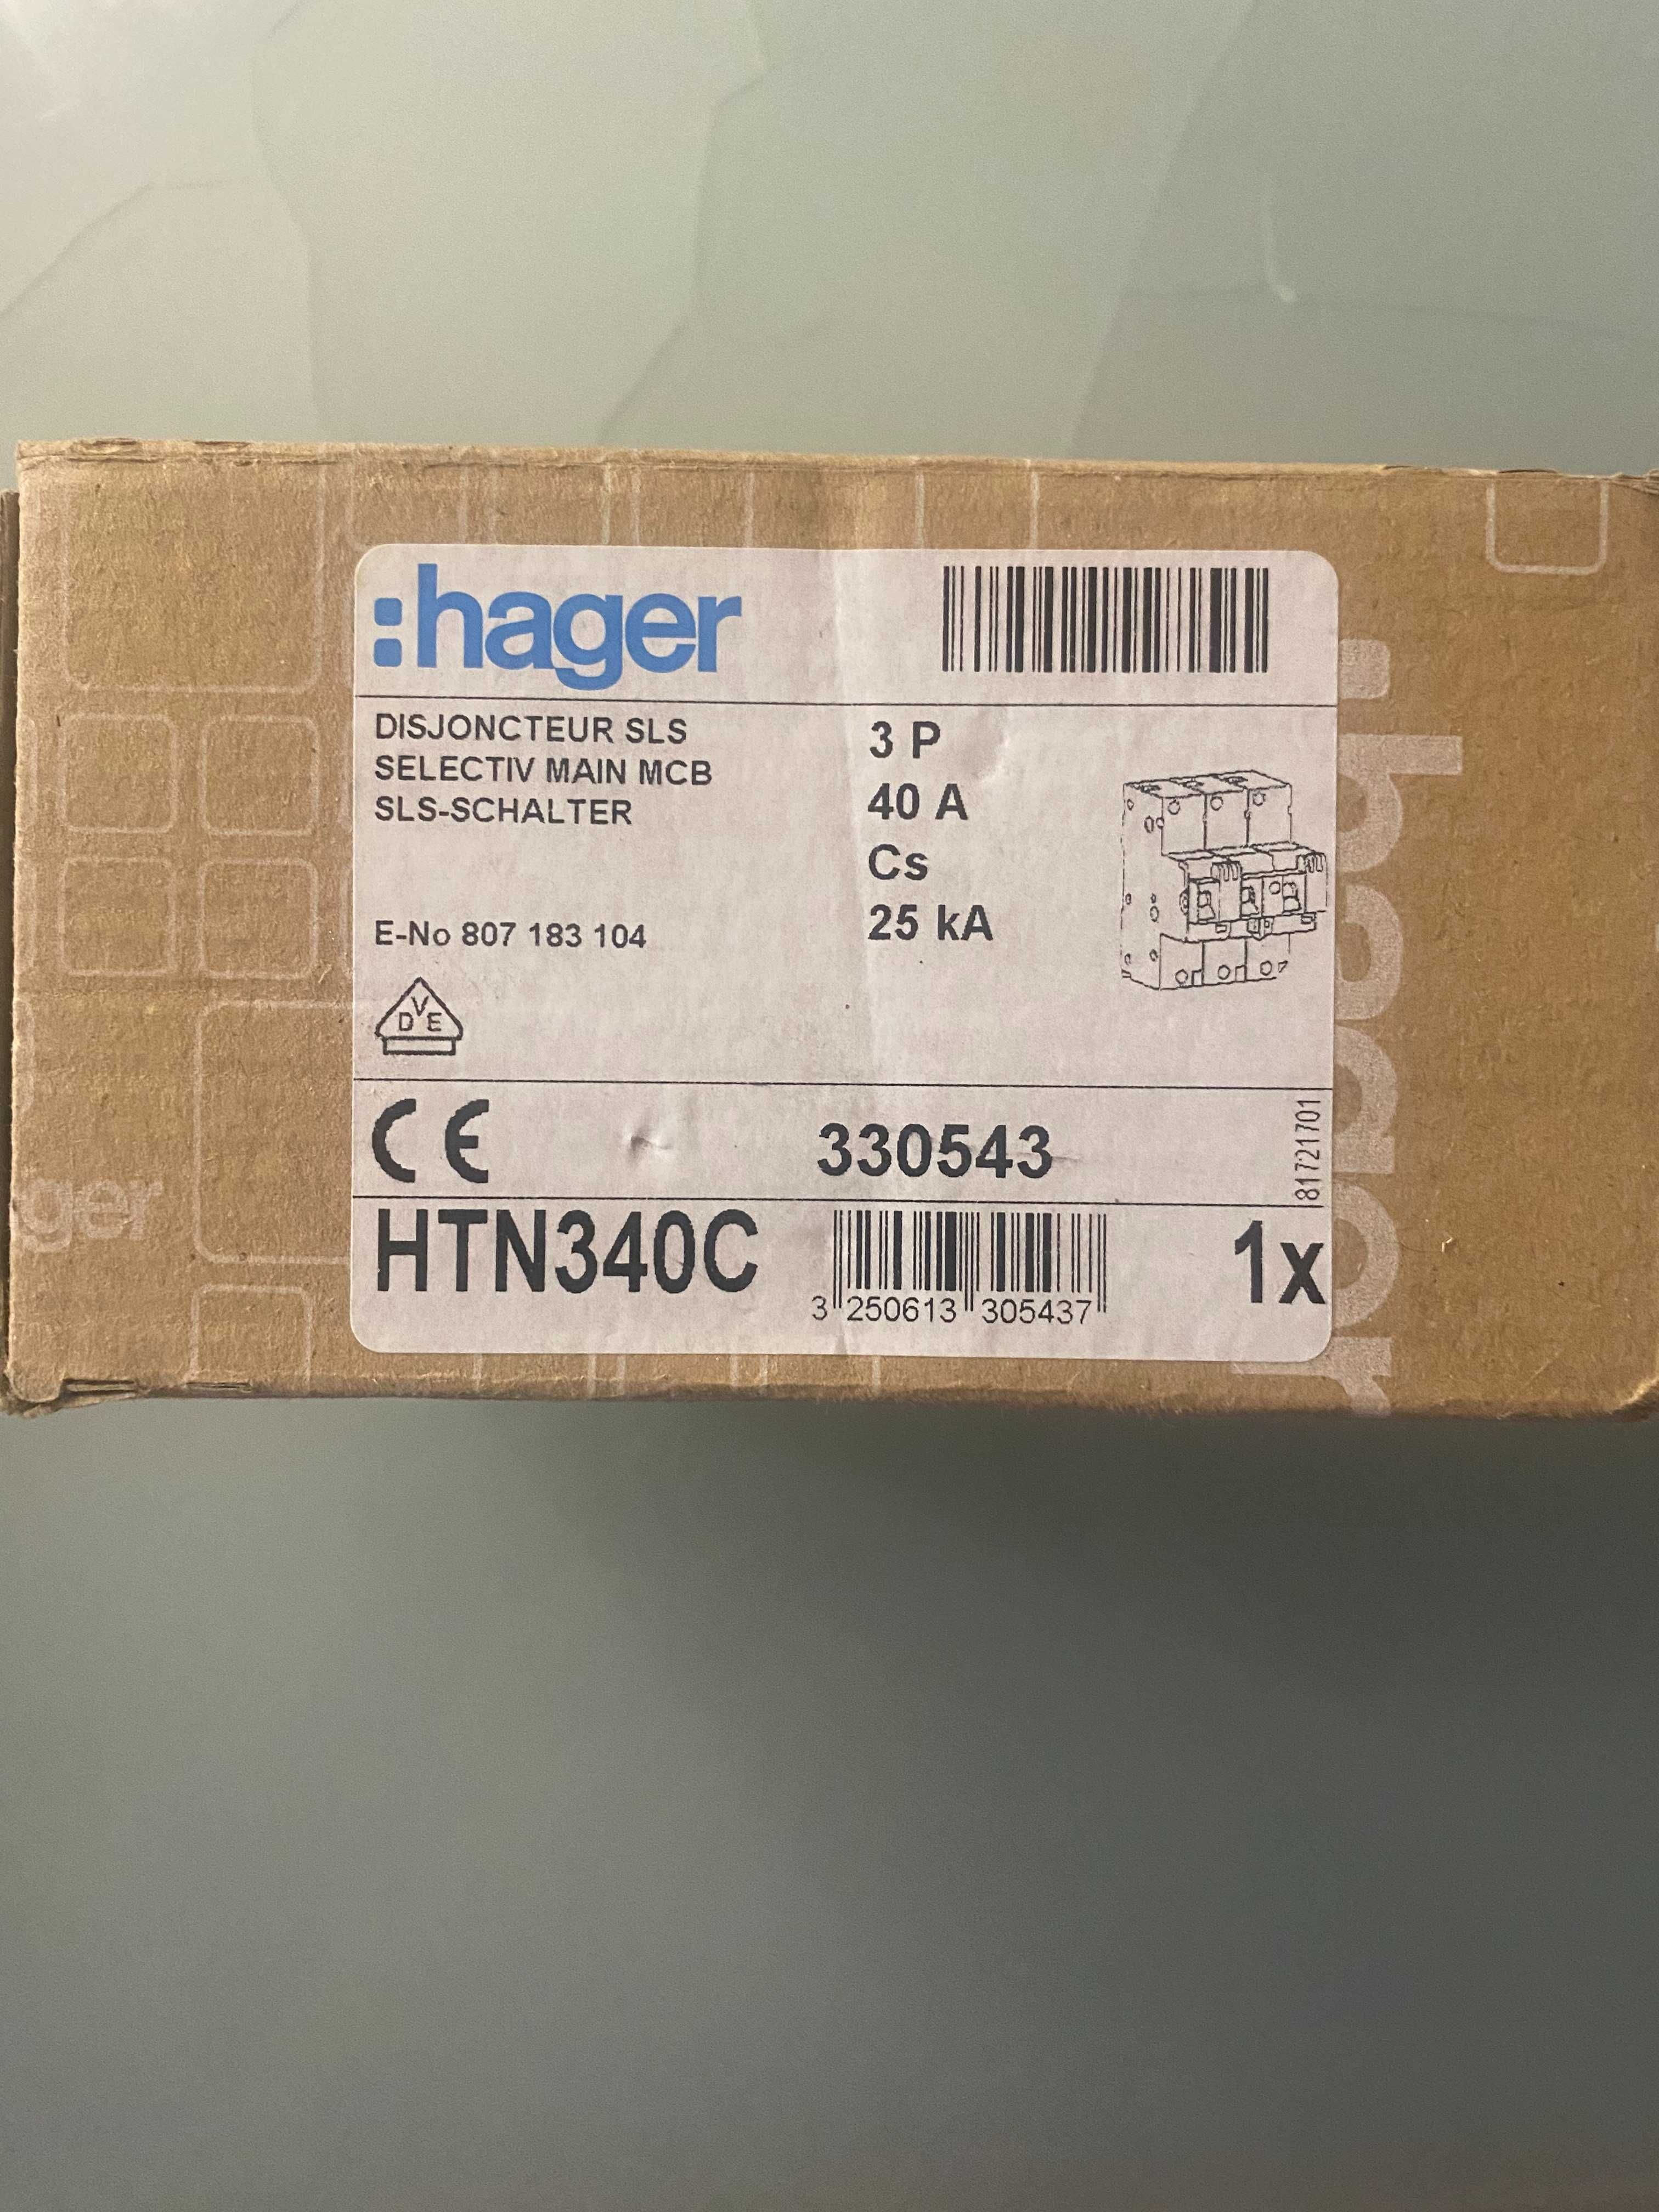 HAGER Wyłącznik nadprądowy selektywny 3P Cs 40A TS35
HTN340C